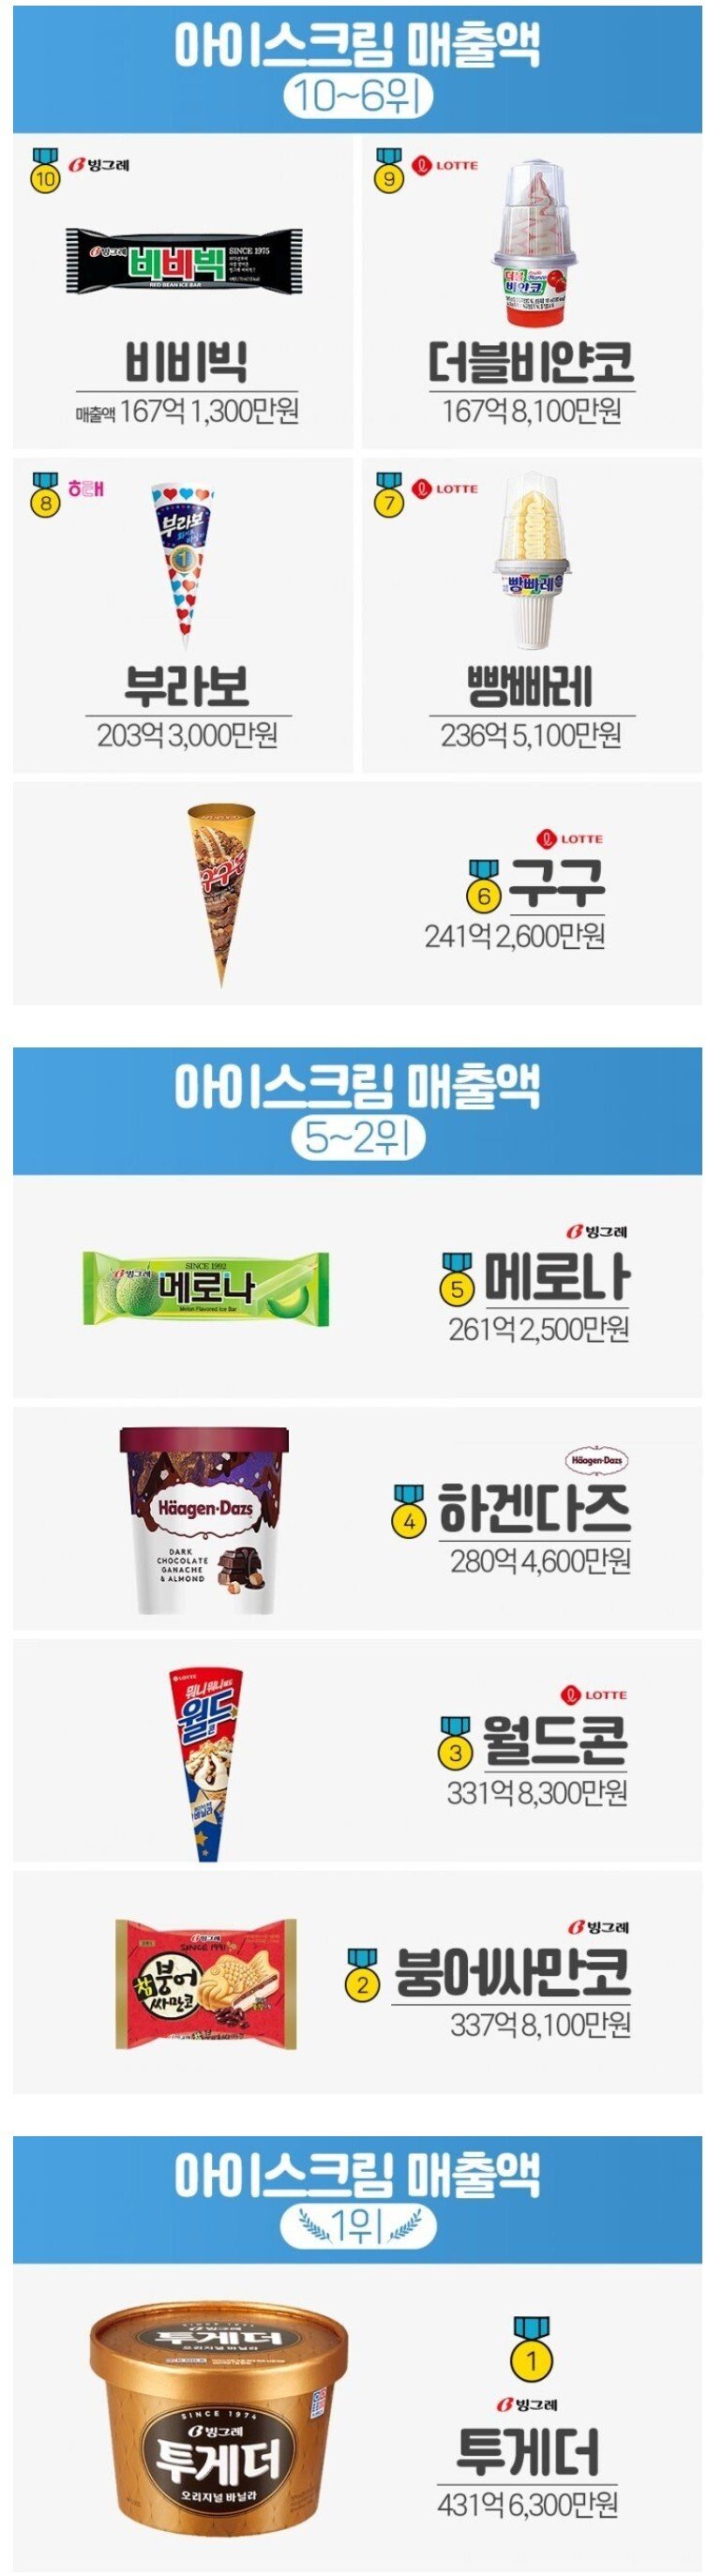 우리나라 아이스크림 매출액 TOP 10